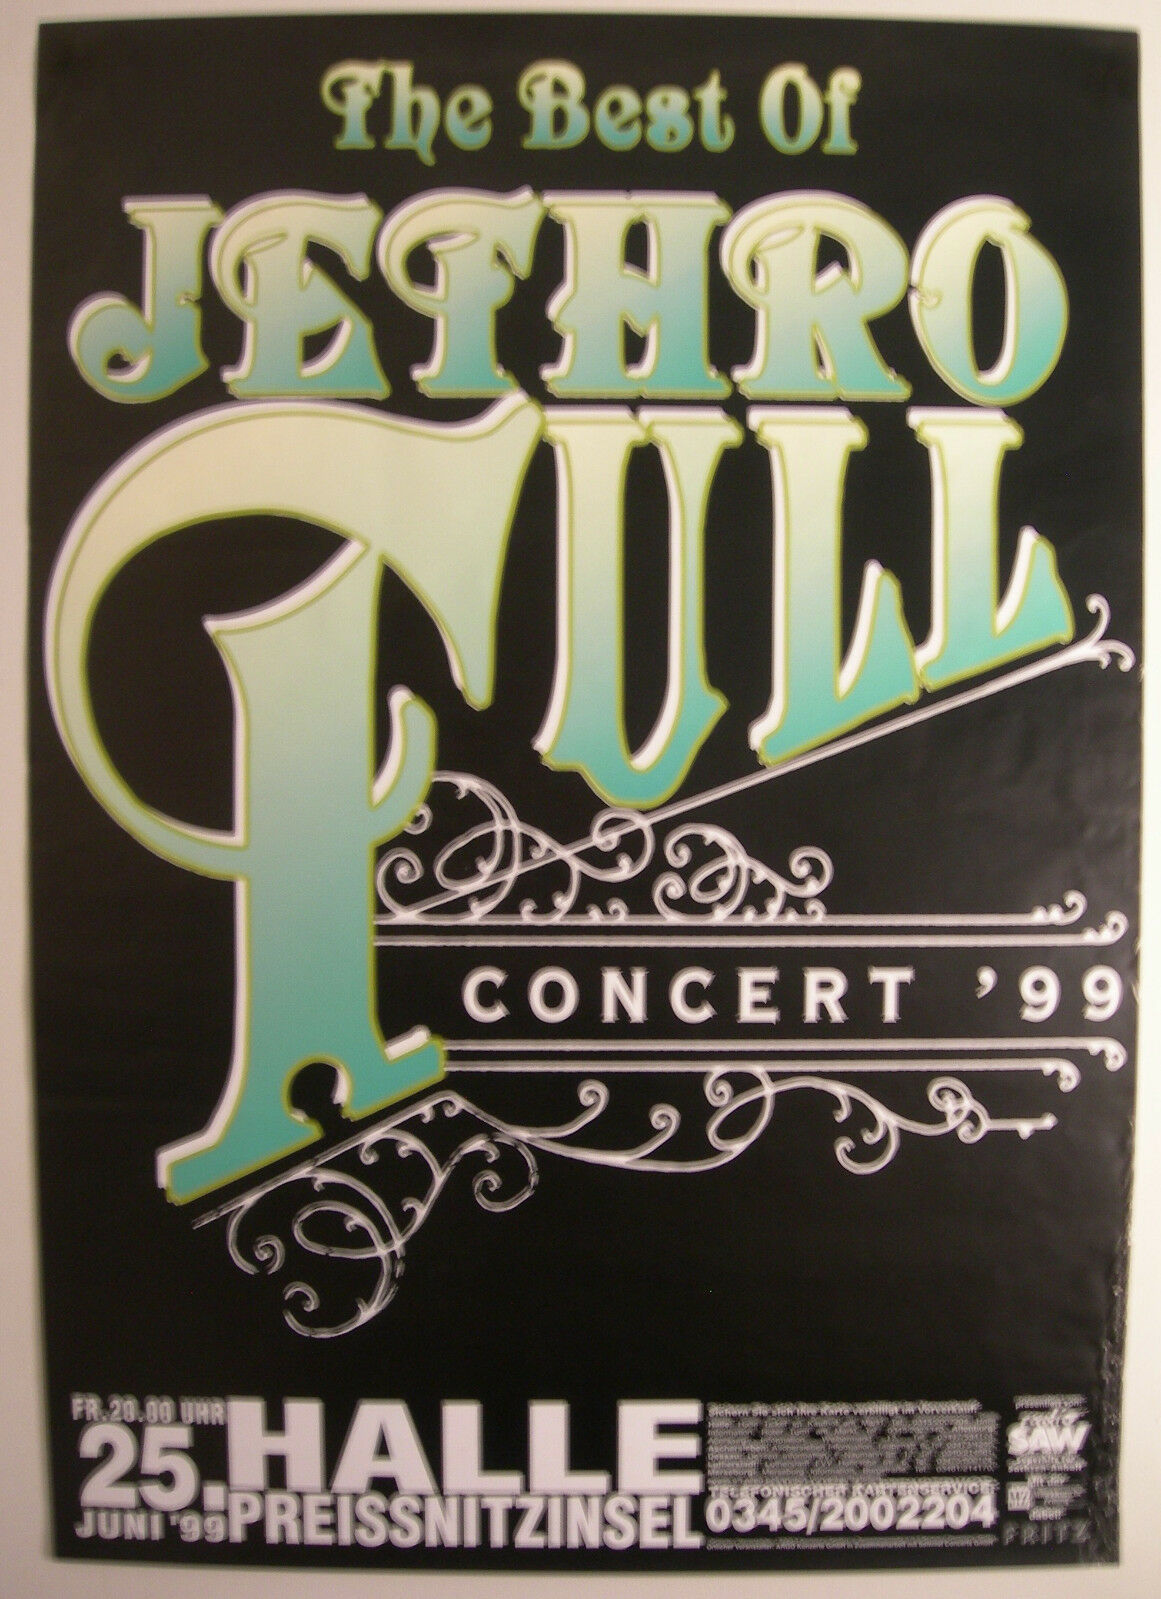 Jethro Tull Concert Tour Poster 1999 The Best Of Jethro Tull